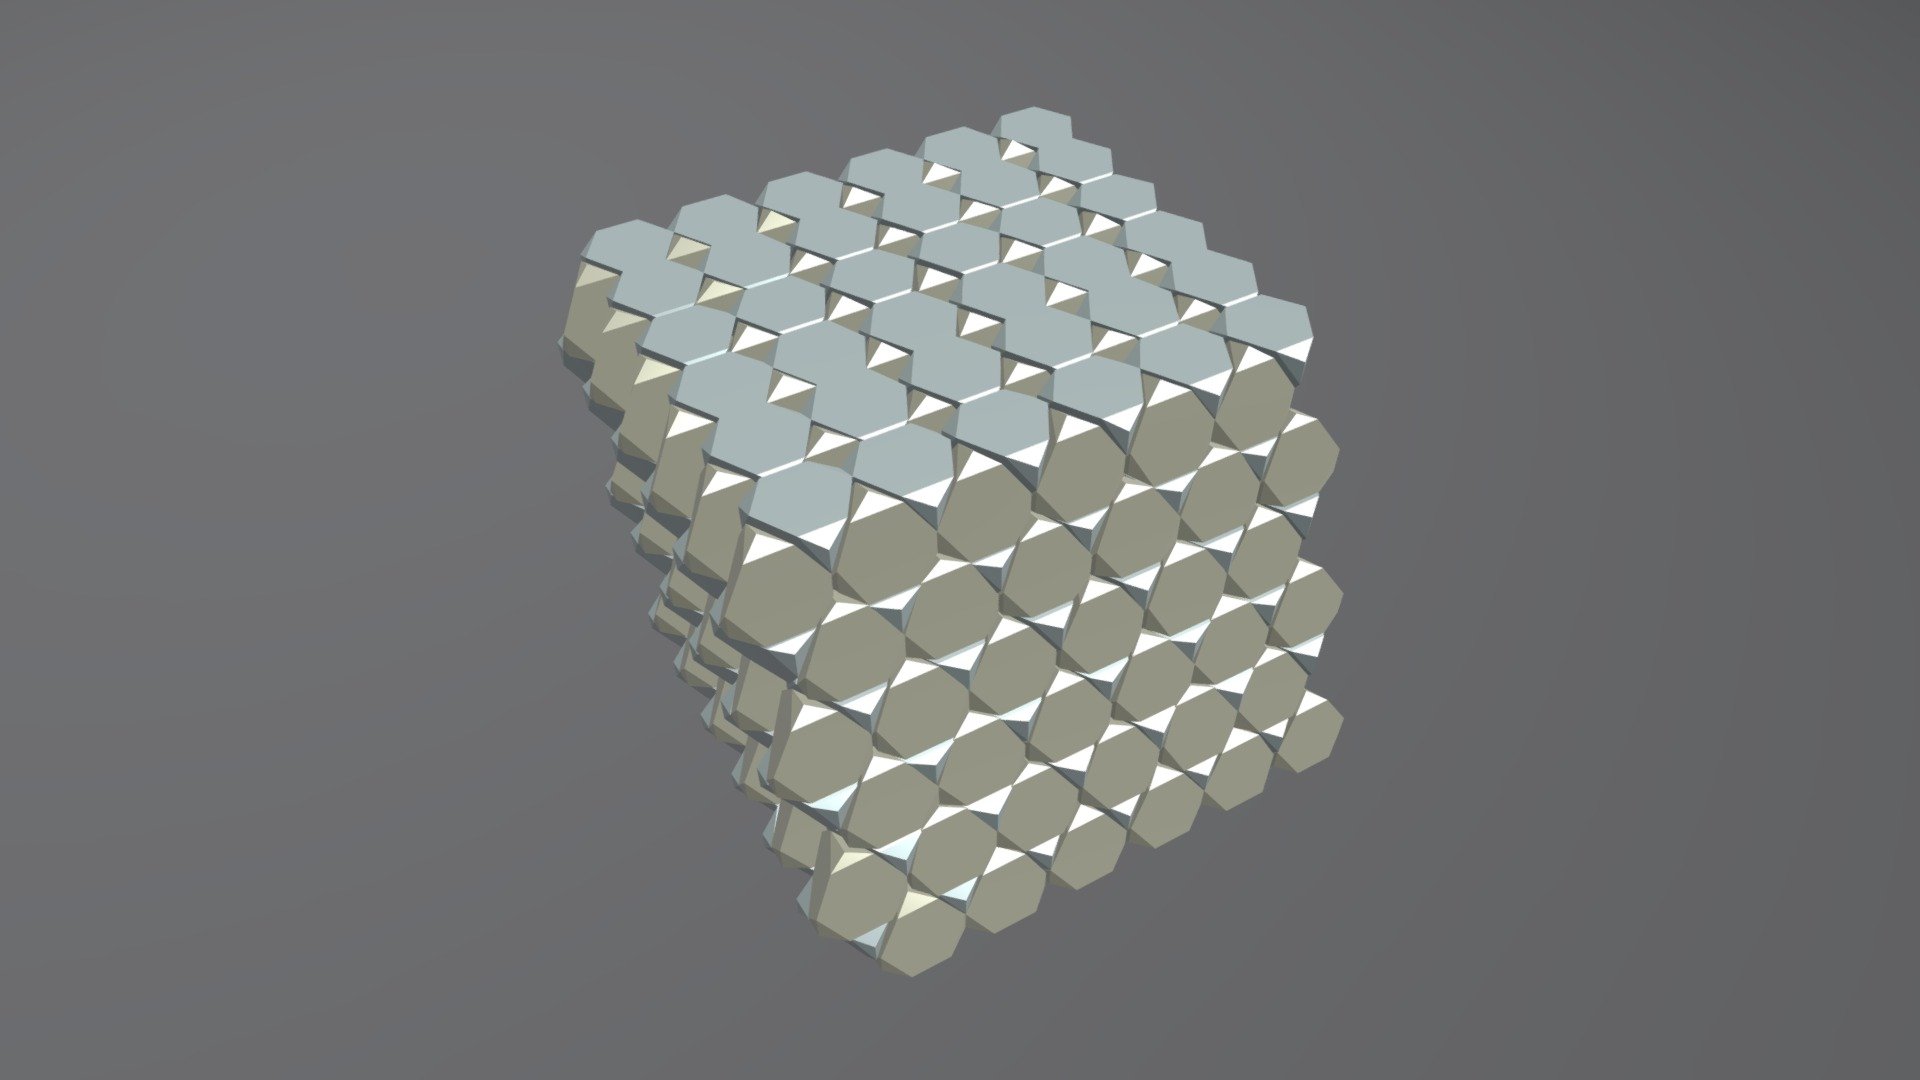 Voronoi Cells of Diamond